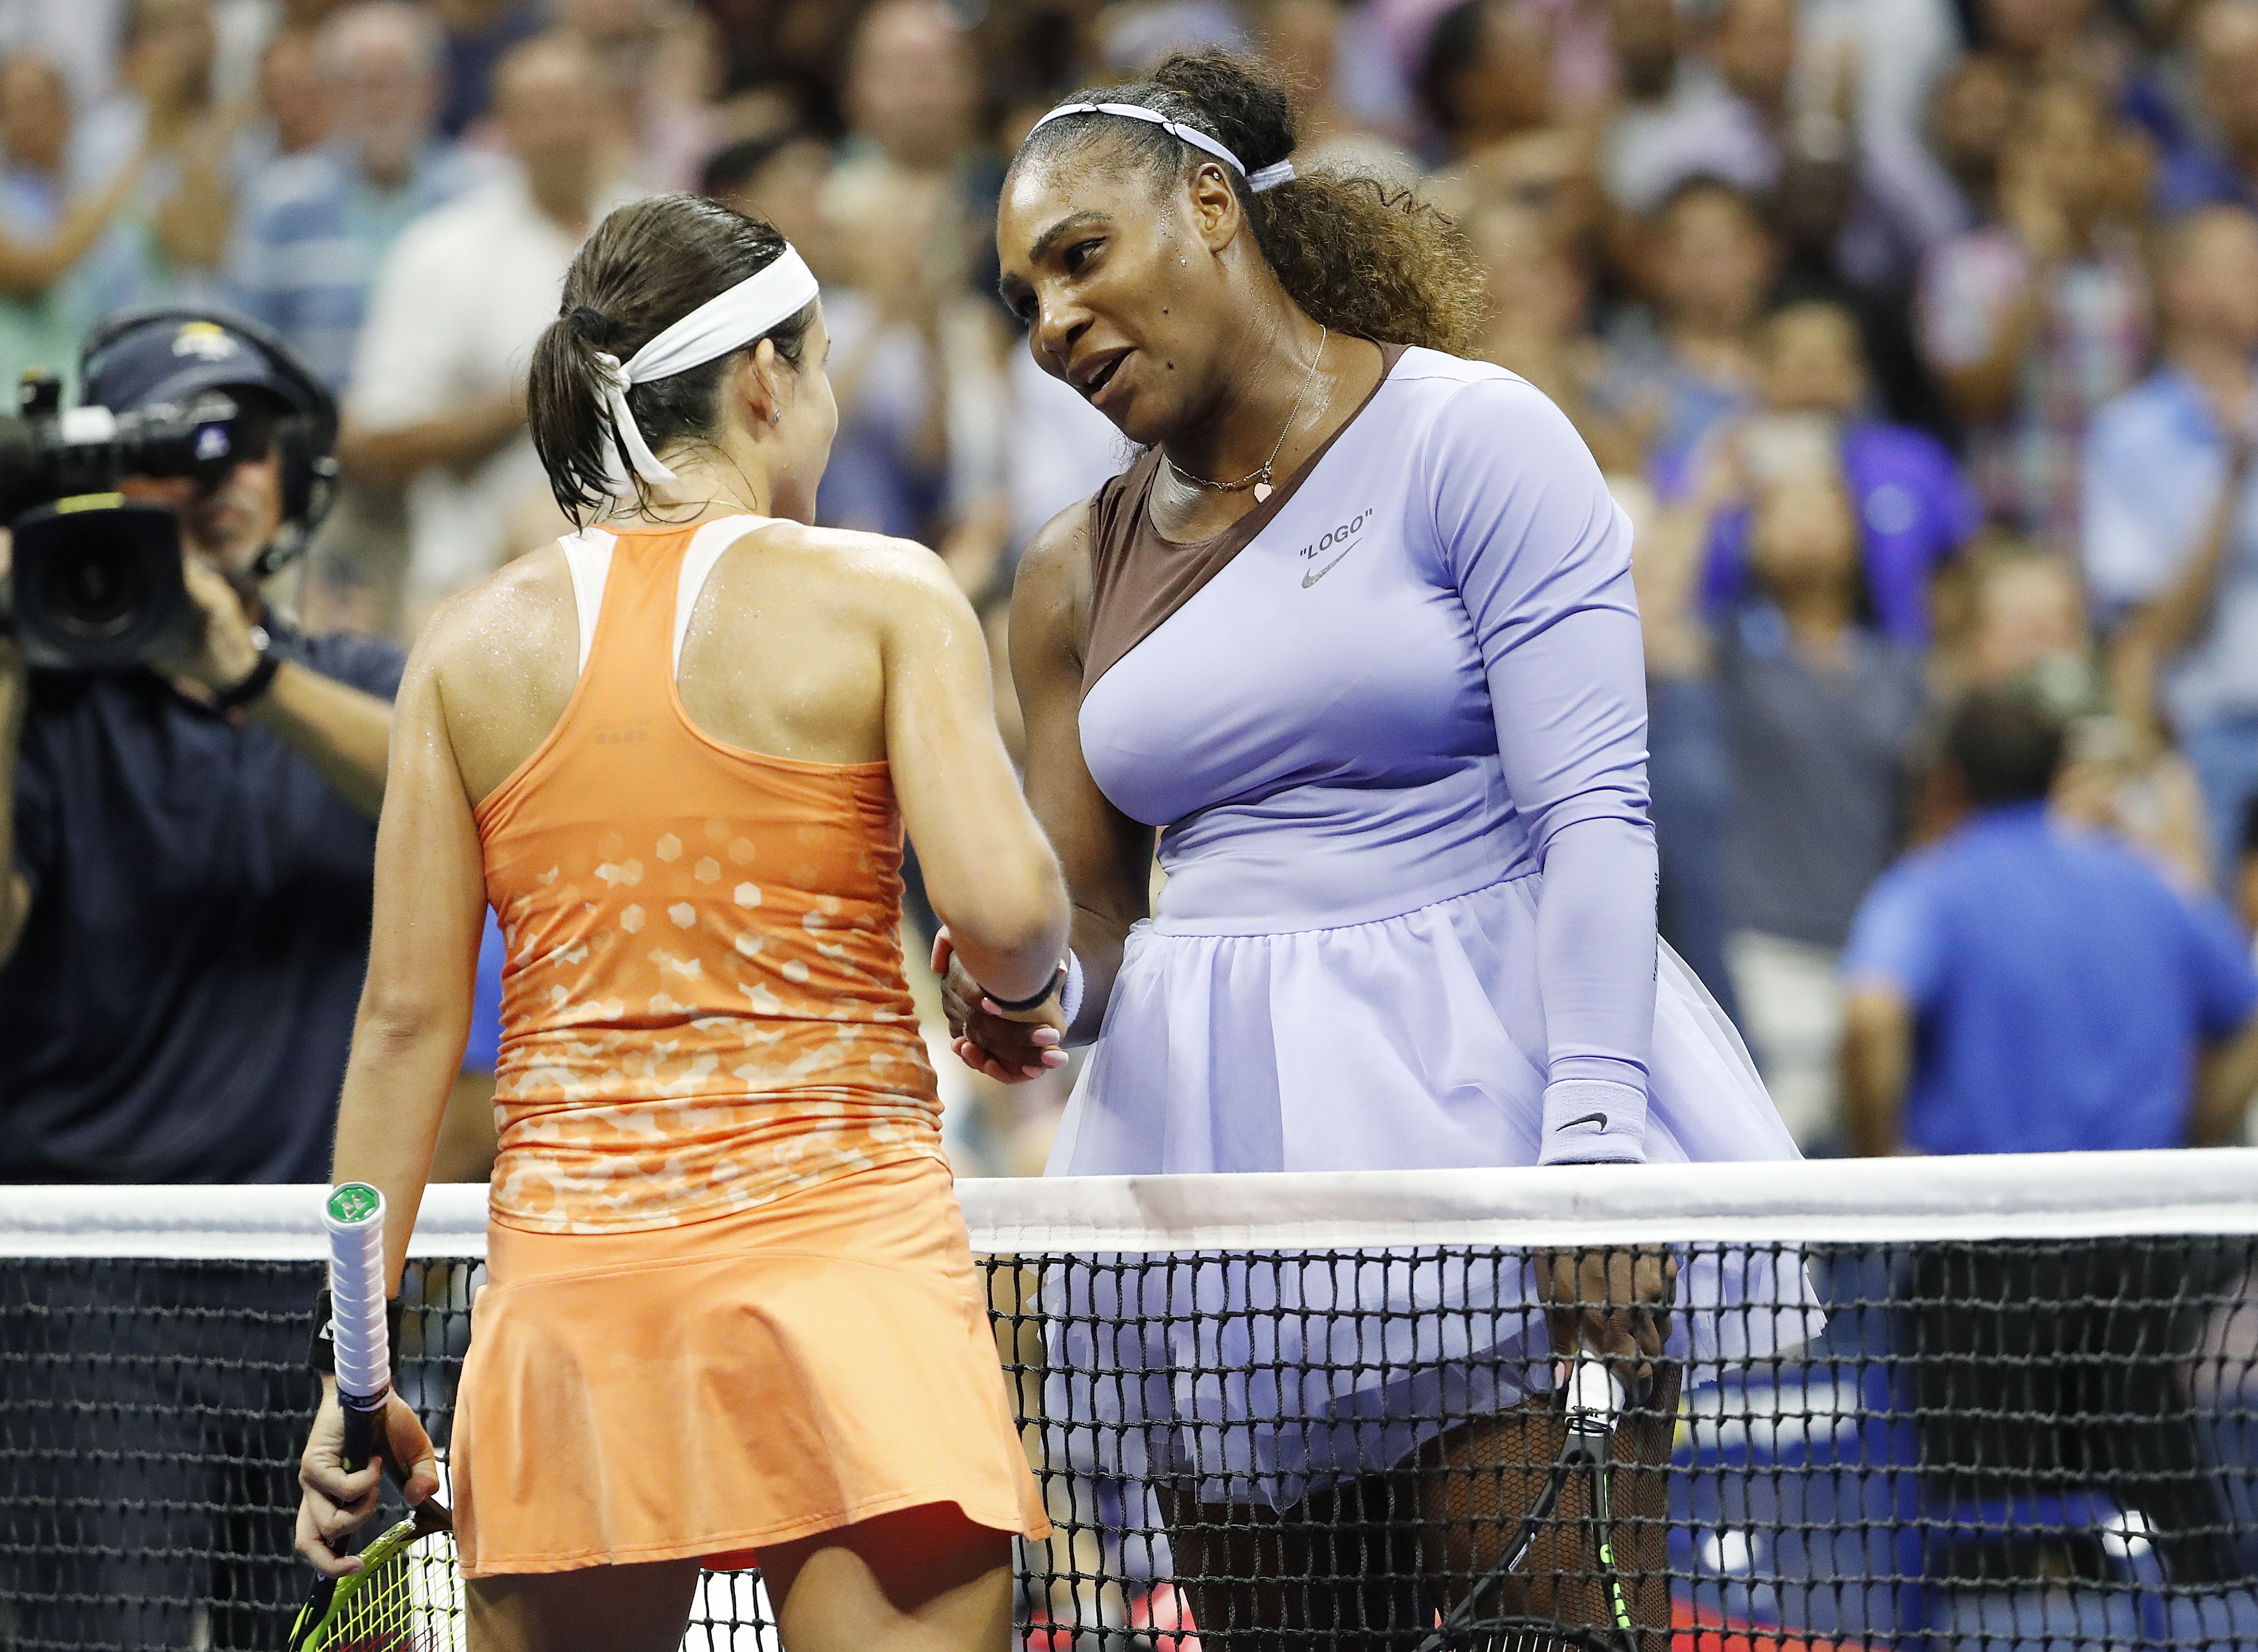 Serena y Sevastova se saludan tras el último punto. / Foto: EFE